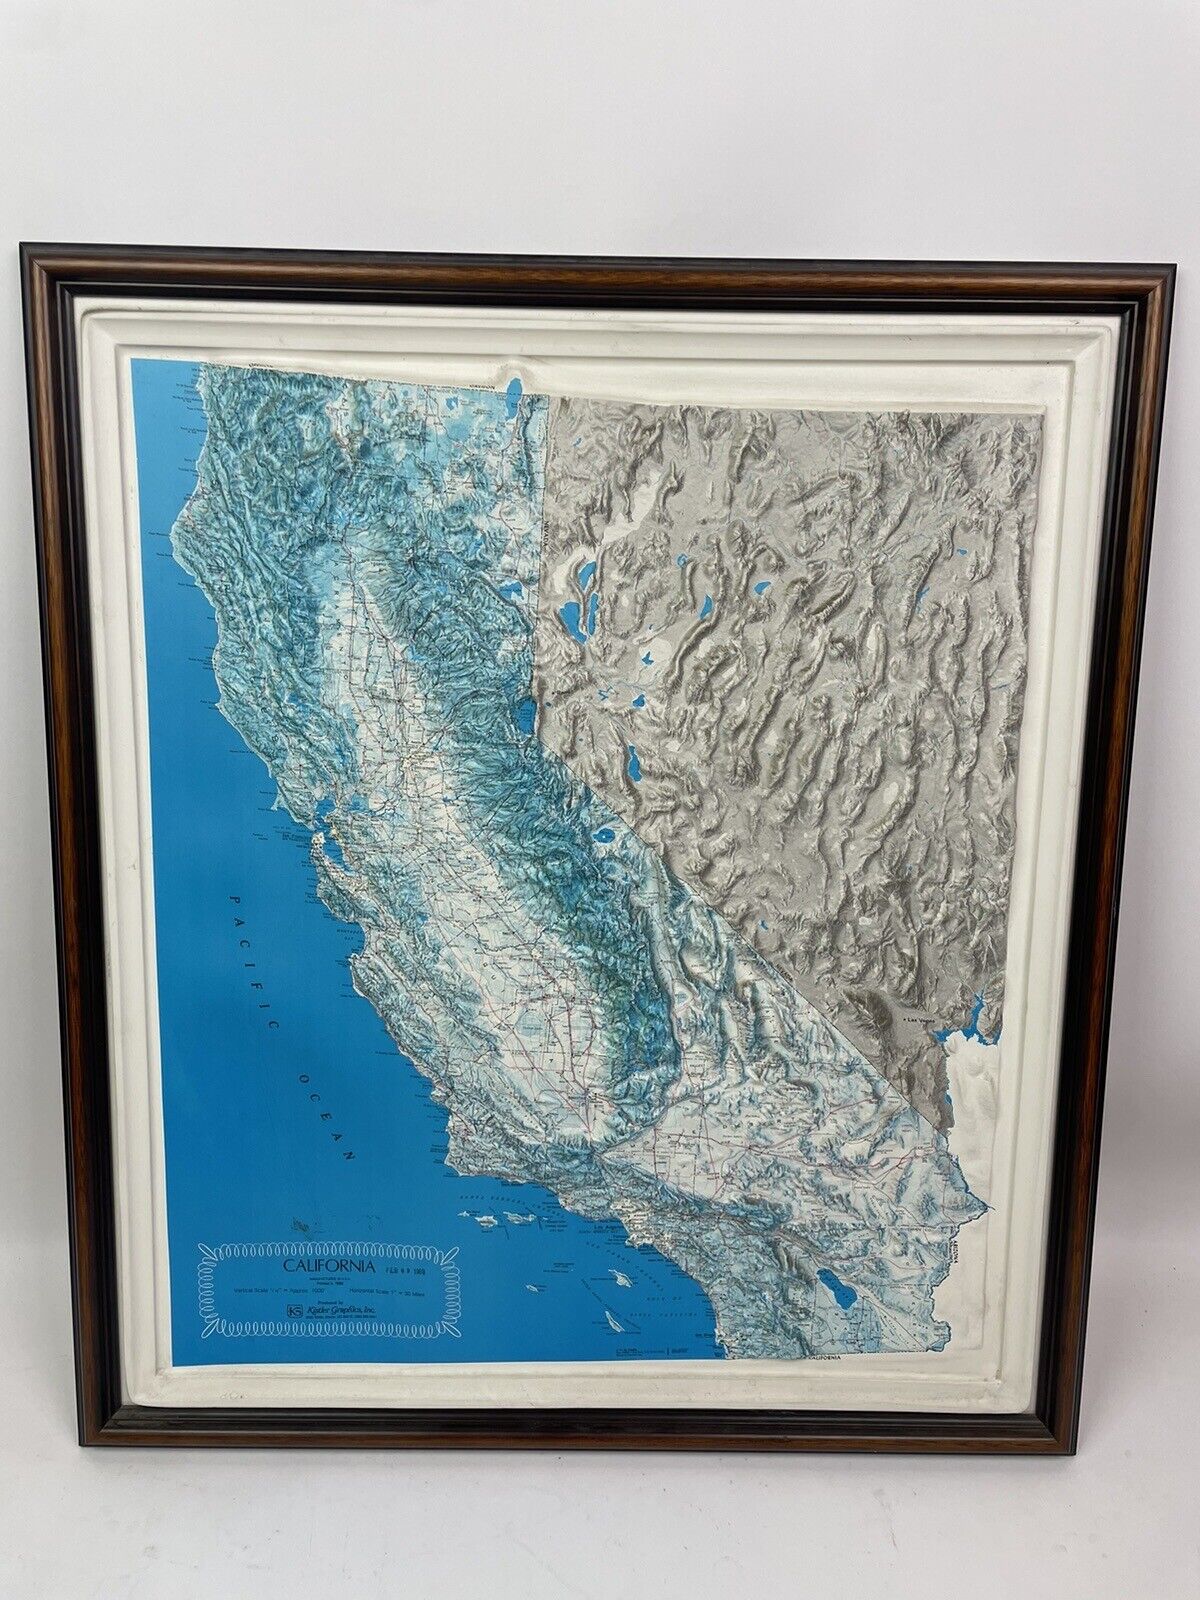 3D topographic map of California framed, Kistler Graphics 1989